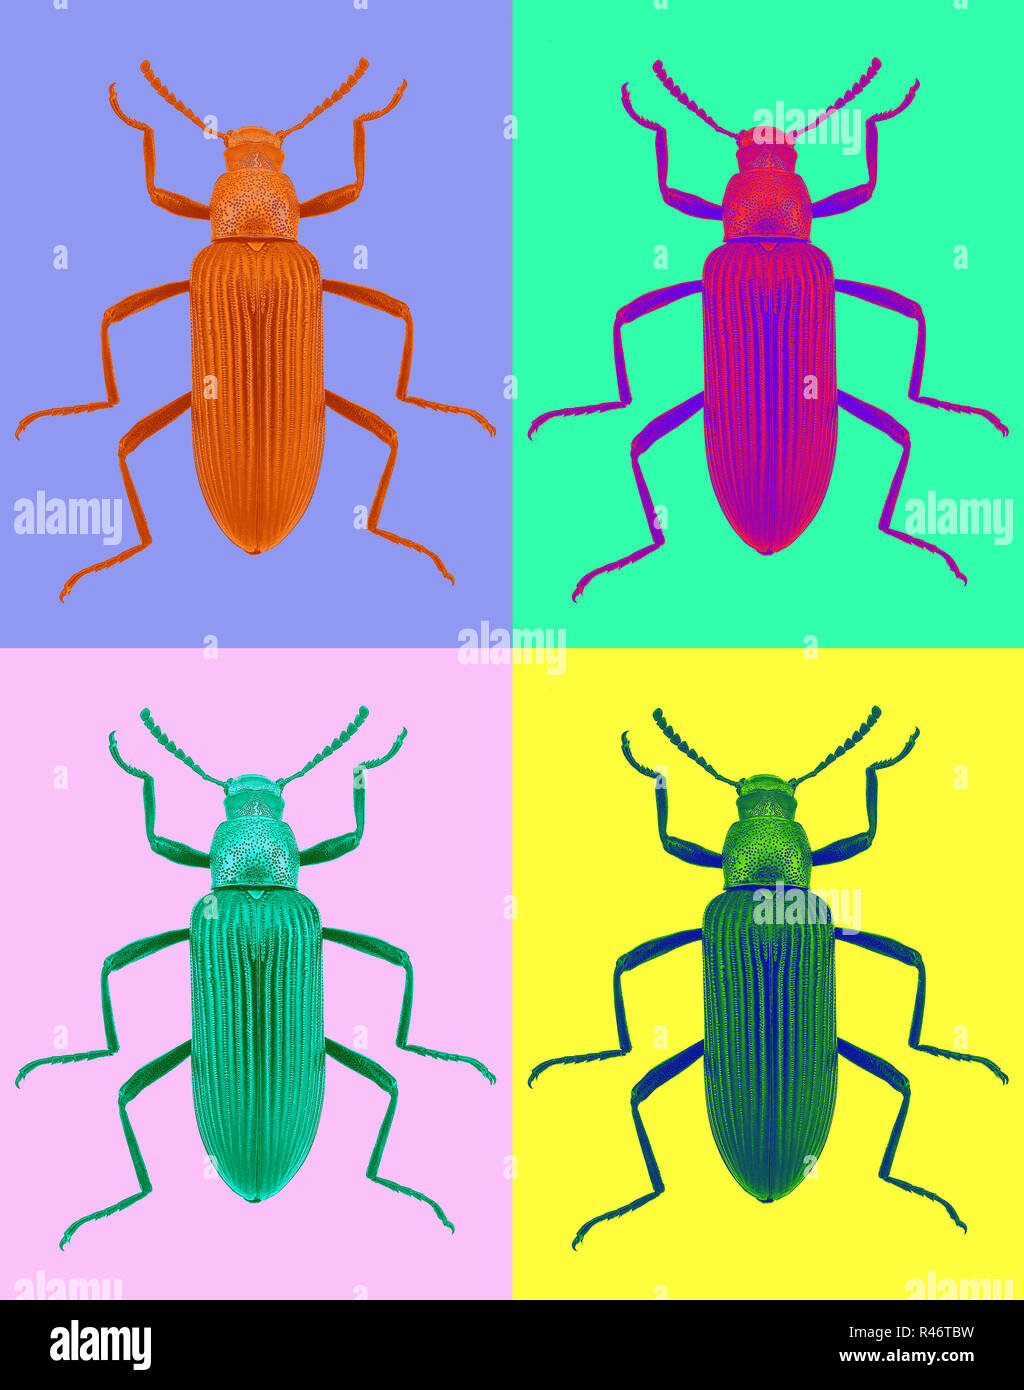 Darkling escarabajo (Strongylium cupripenne) en estilo pop art Foto de stock